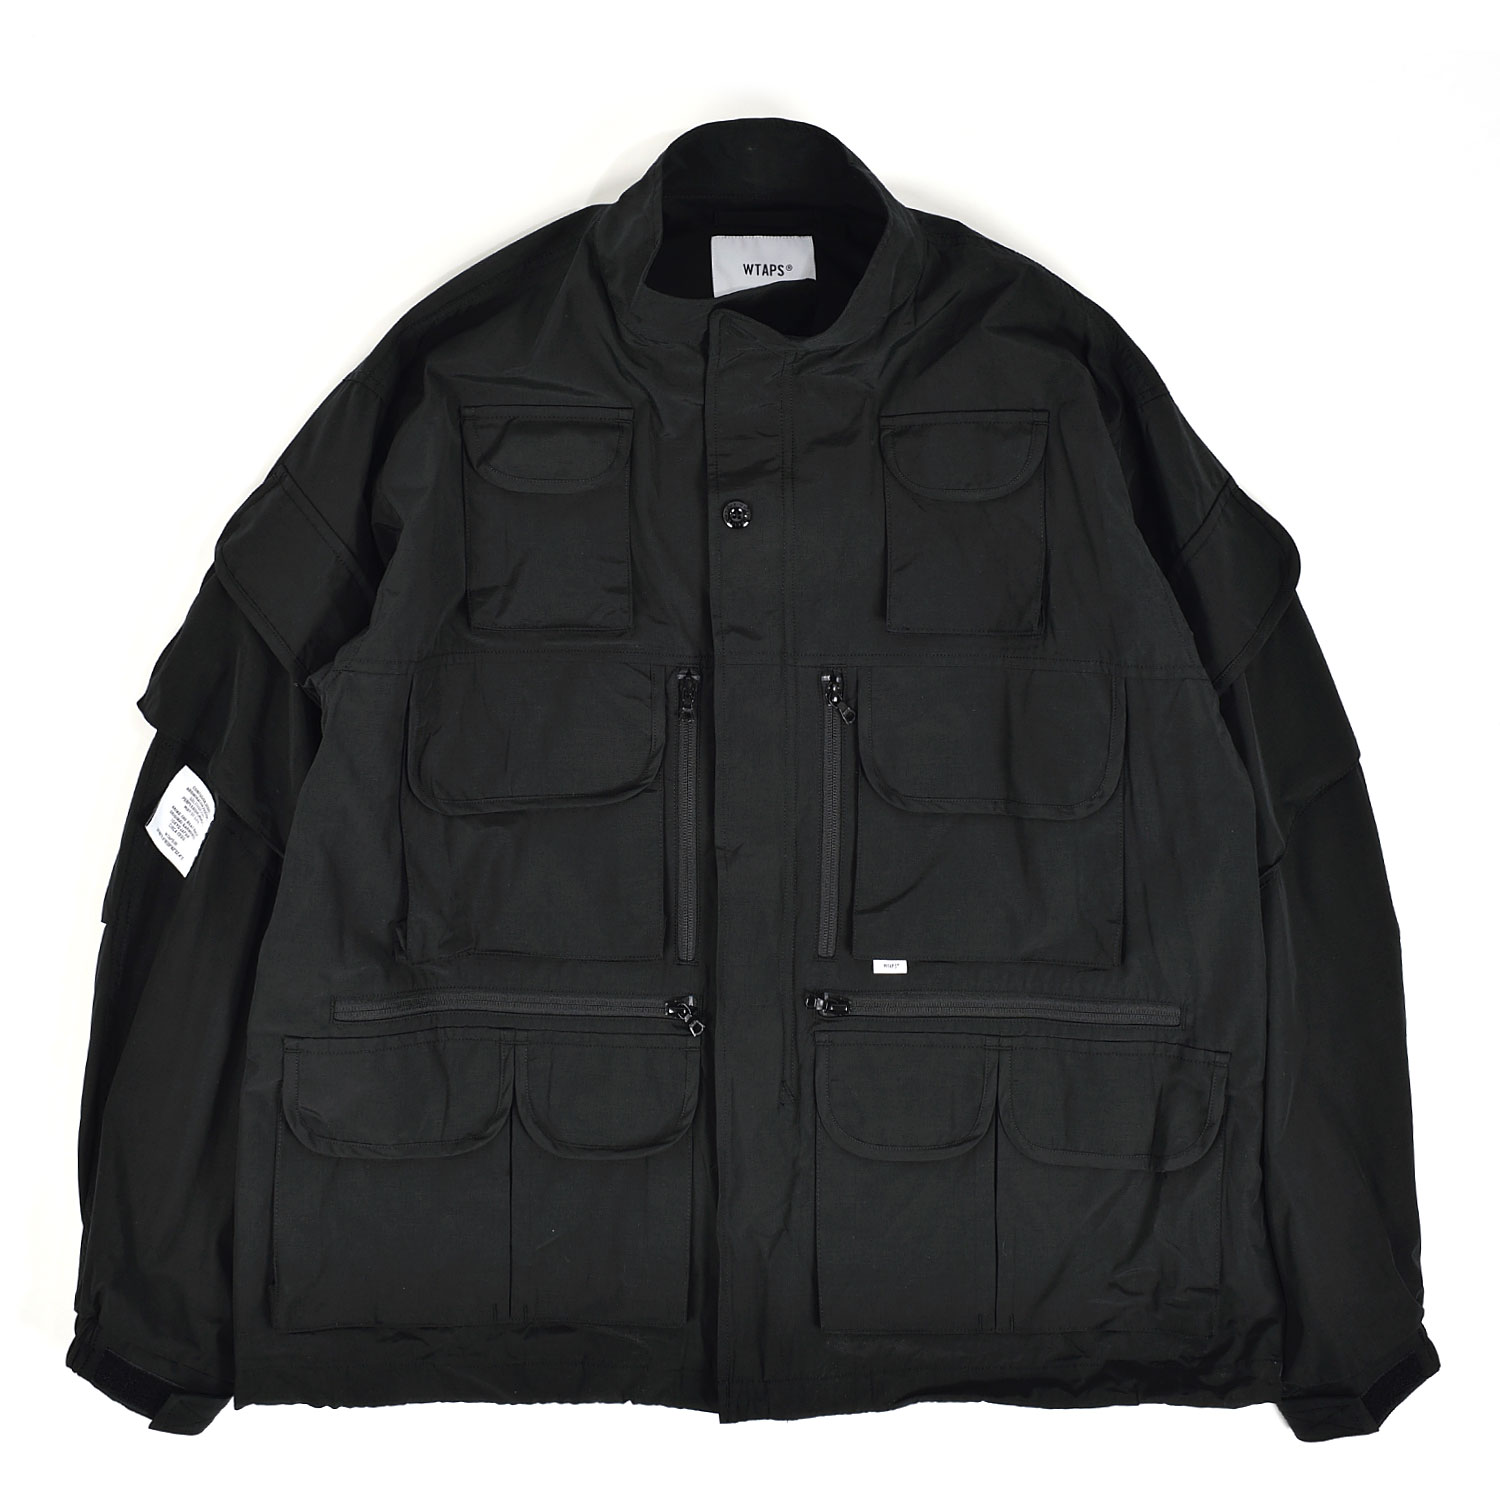 24,000円wtaps modular jacket